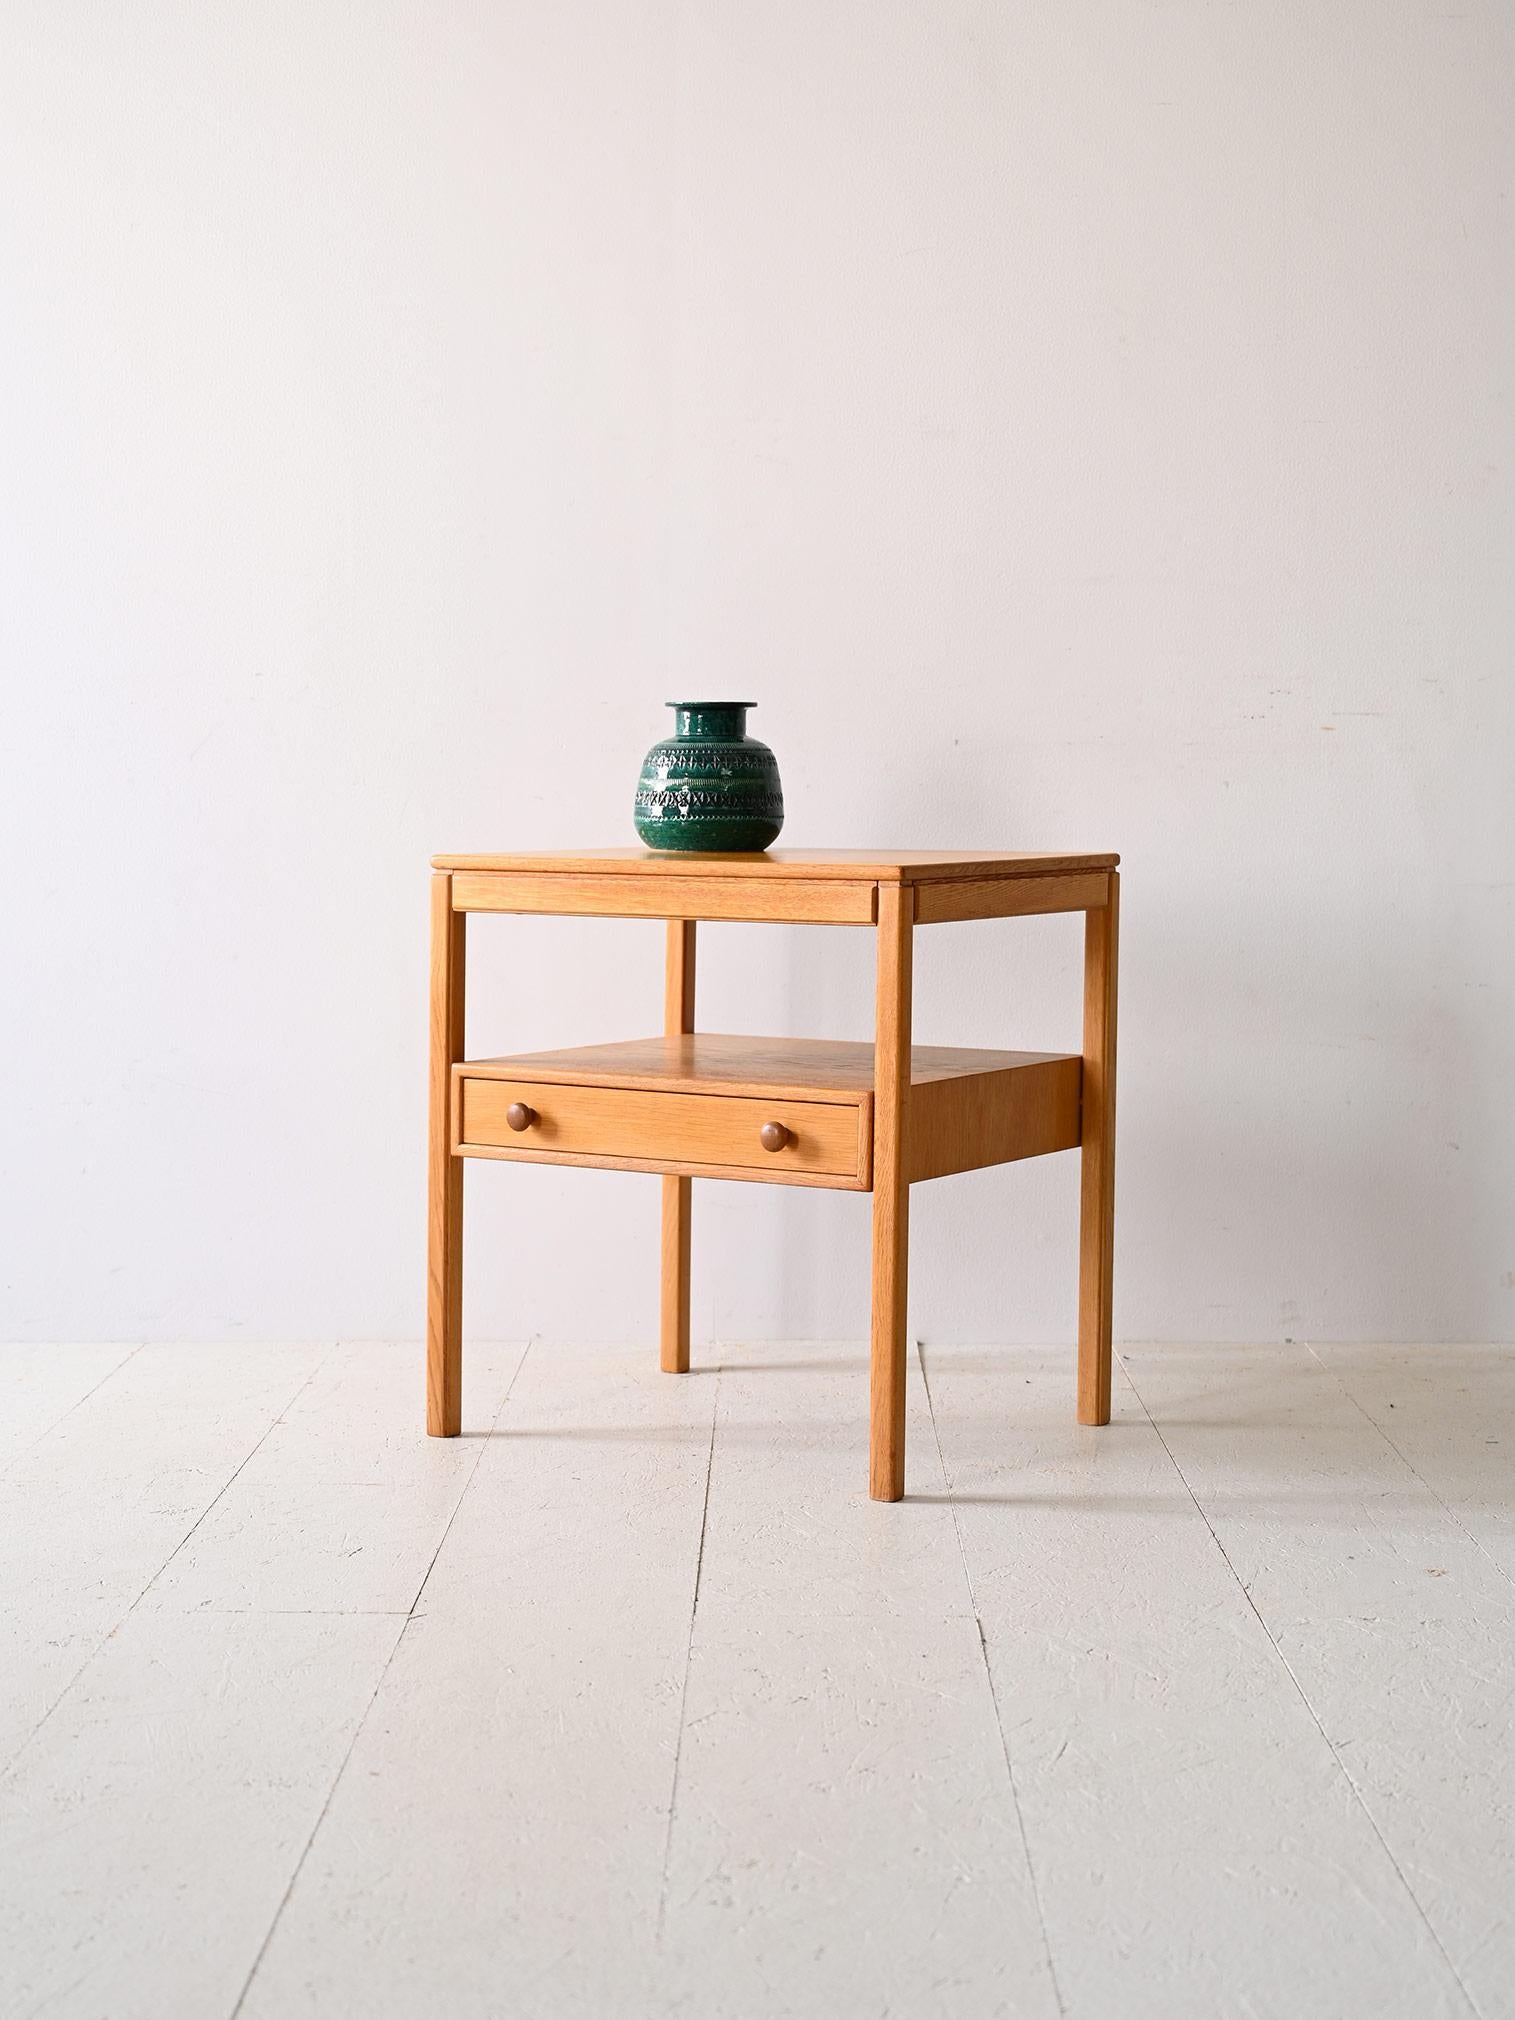 Originaler Nachttisch aus nordischer Eiche im Vintage-Stil.

Es ist aus Eichenholz gefertigt und hat eine raffinierte Struktur mit dünnen, quadratischen Beinen, die dem Möbel einen leichten Touch verleihen. Die Schublade mit ihren runden,